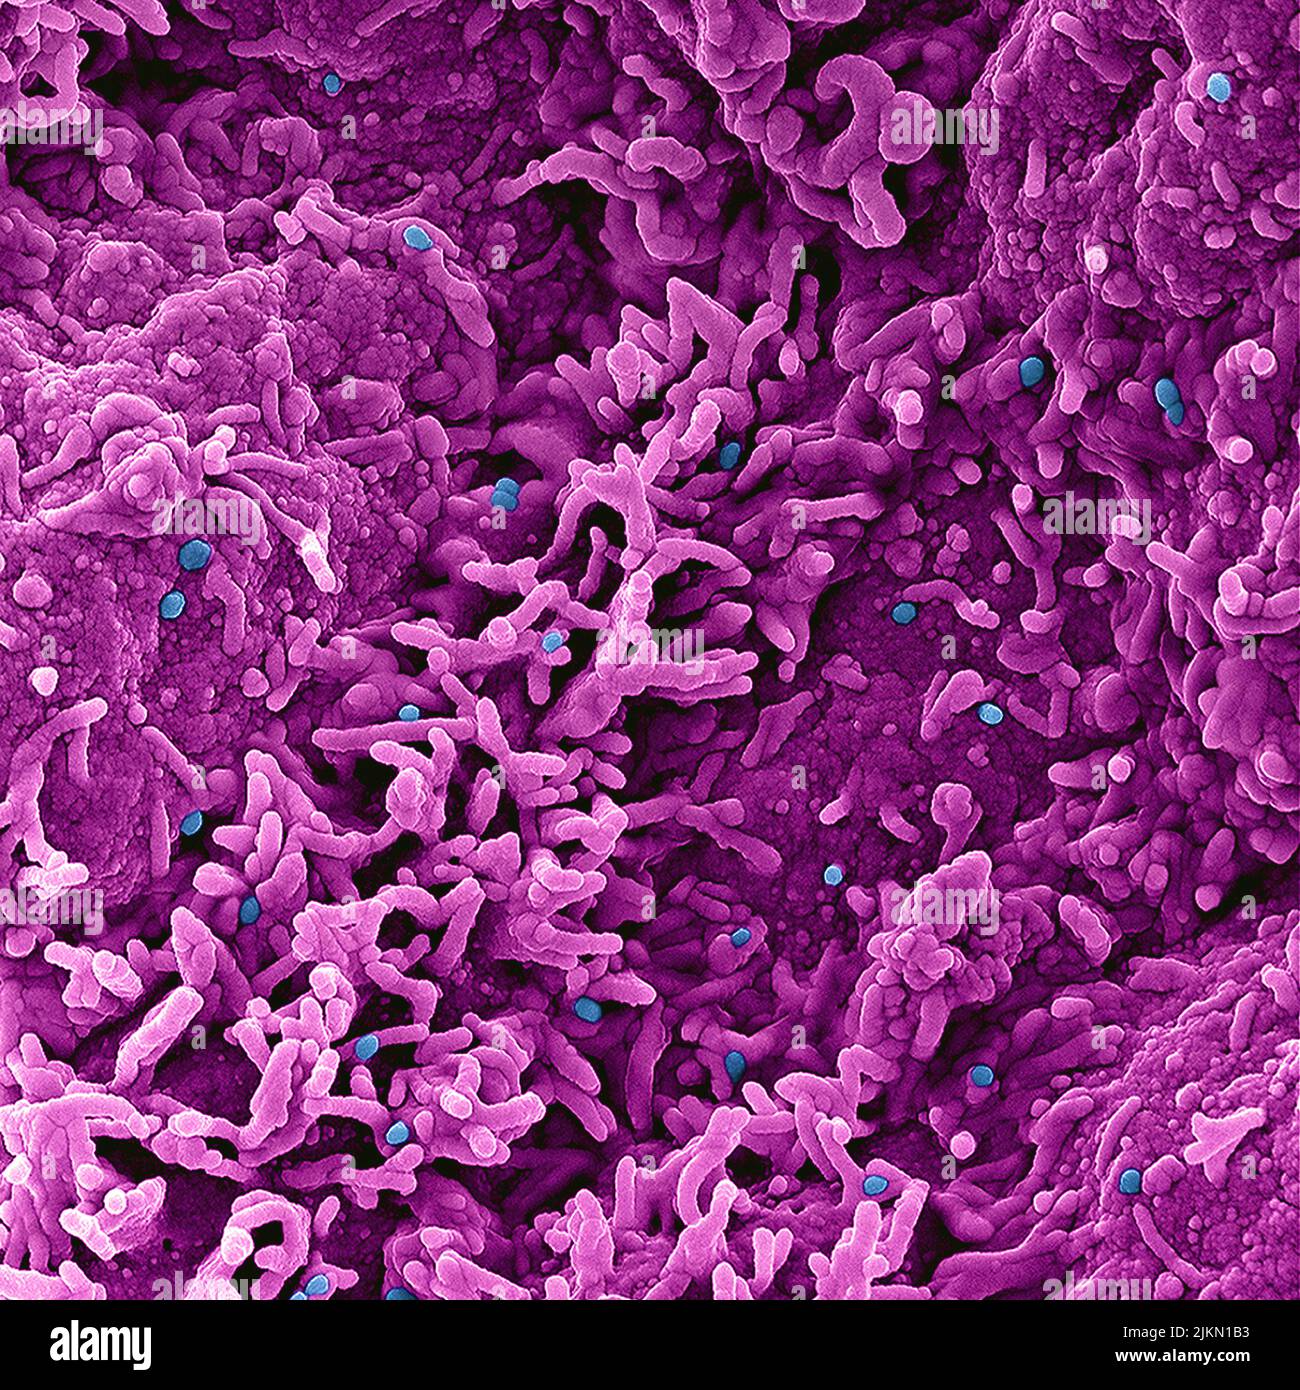 Virus de la viruela del simio Micrografía electrónica coloreada de las partículas de viruela del simio encontradas en una célula infectada , cultivada en el laboratorio. Imagen capturada y con color mejorado en la Instalación Integrada de Investigación NIAID (IRF) en Fort Detrick, Maryland. Crédito: NIAID Foto de stock